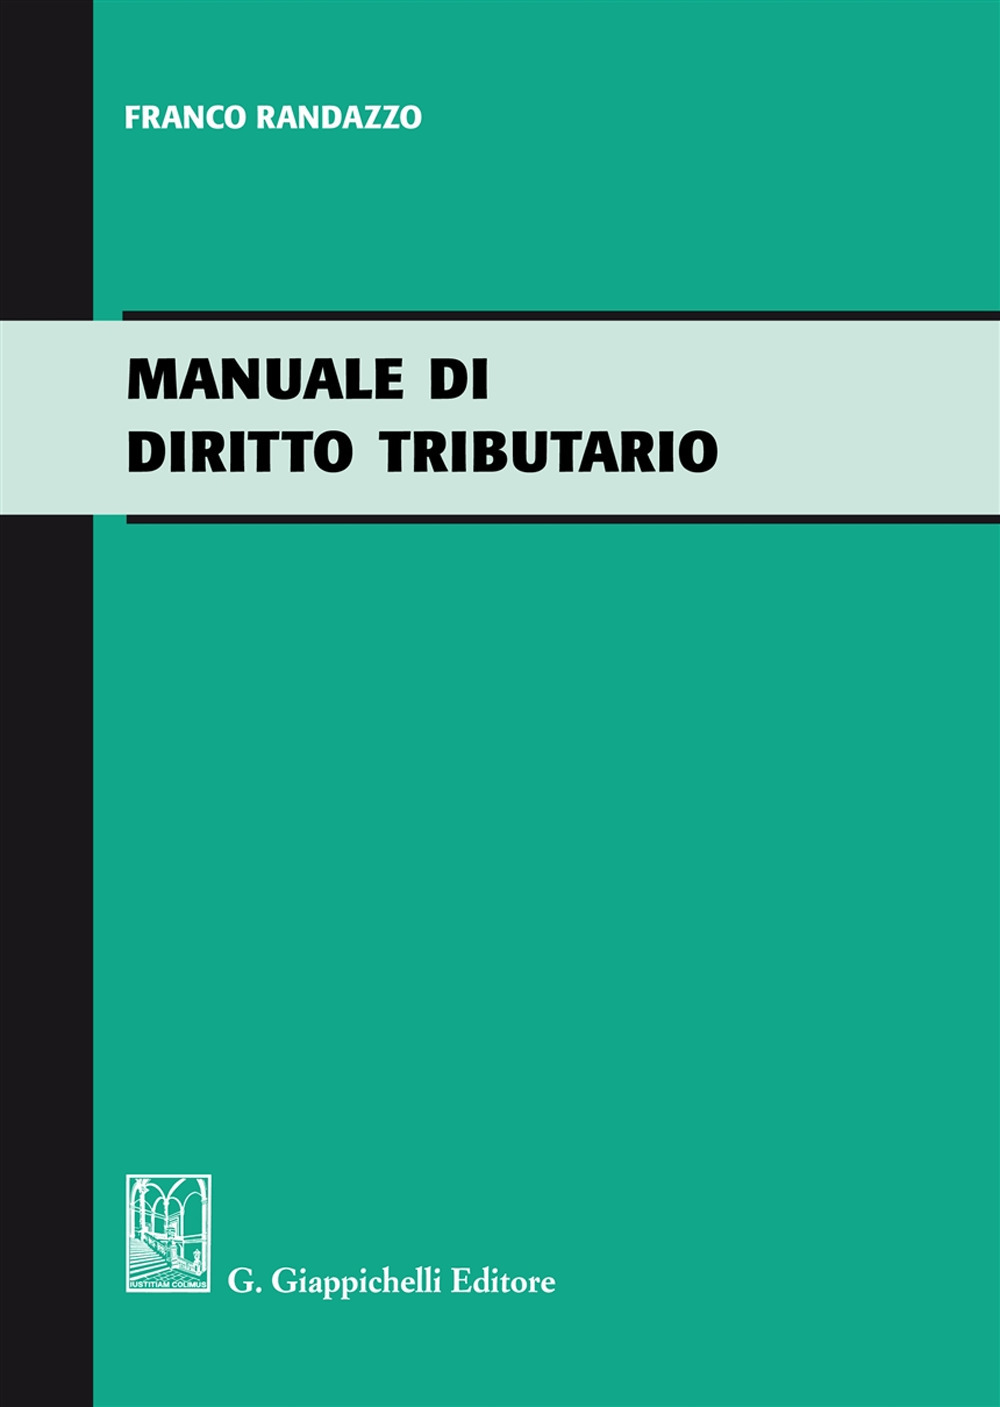 Libri Francesco Randazzo - Manuale Di Diritto Tributario NUOVO SIGILLATO, EDIZIONE DEL 02/10/2018 SUBITO DISPONIBILE